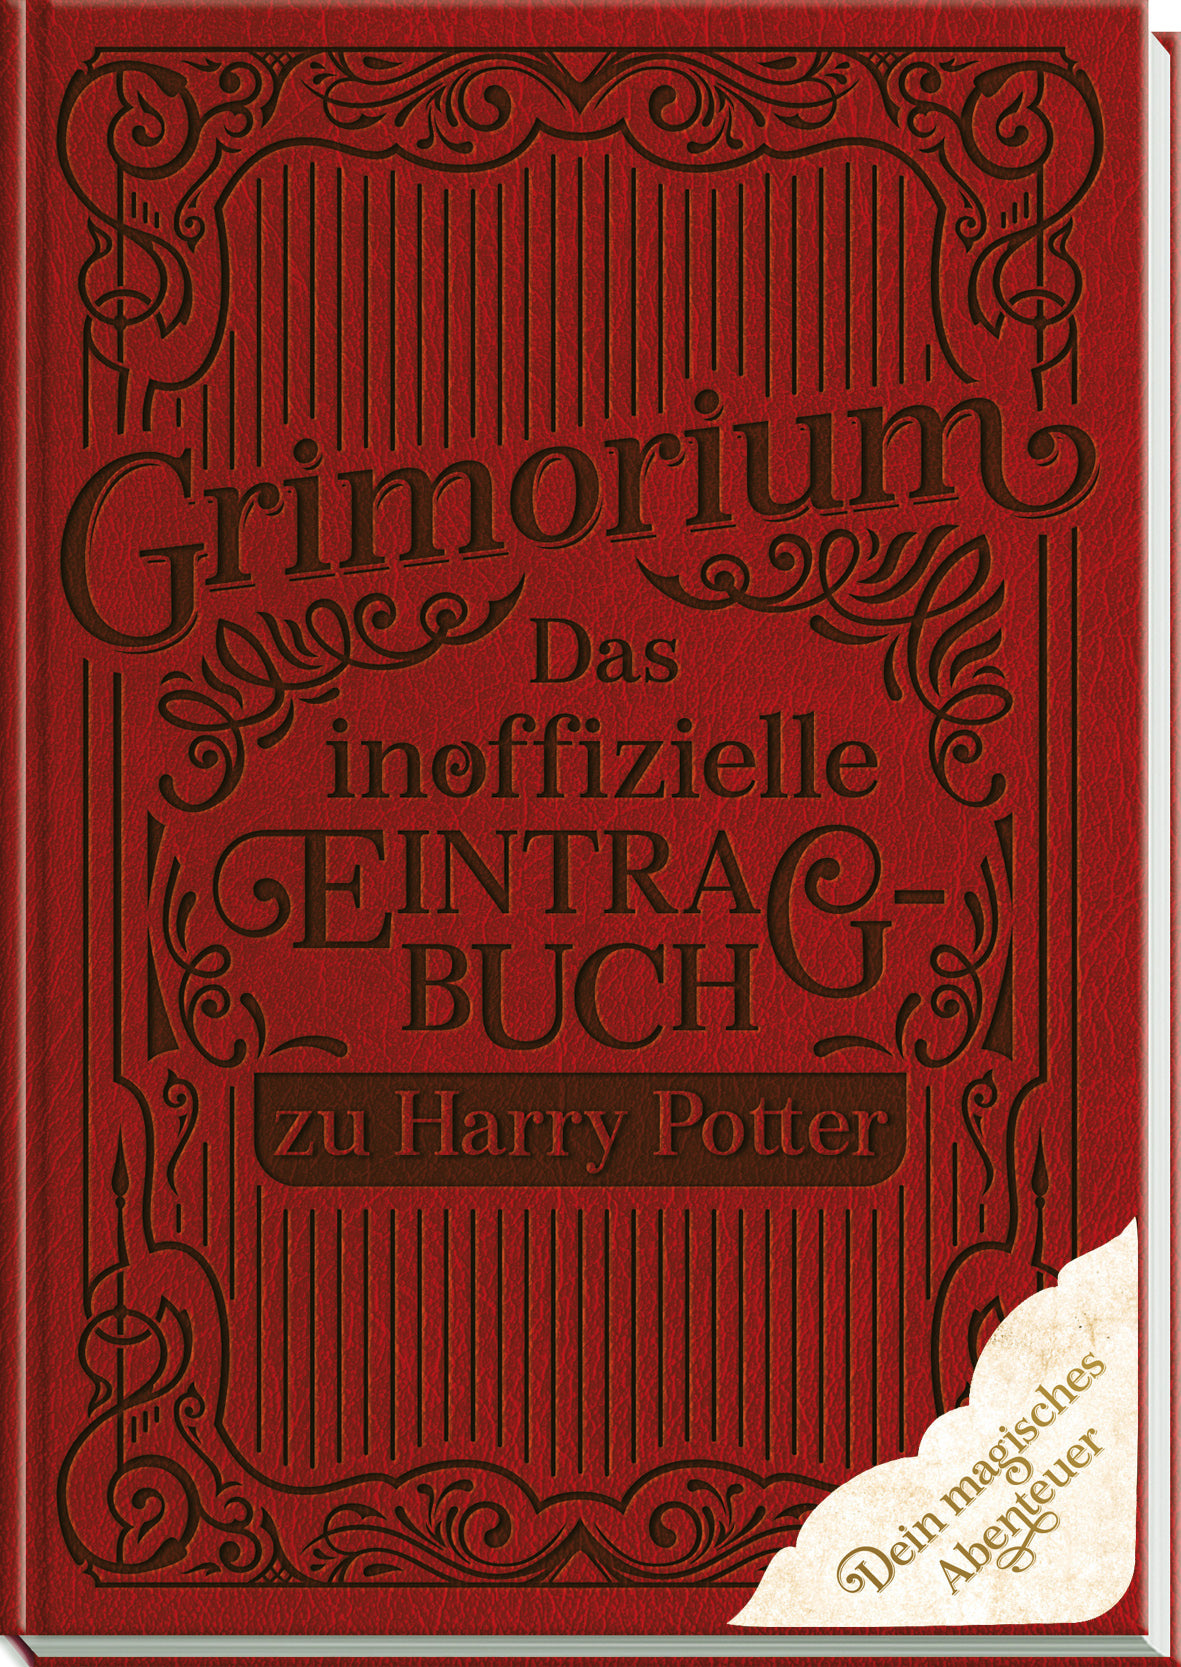 Harry Potter - Grimorium - Das inoffzielle Eintragbuch zu Harry Potter